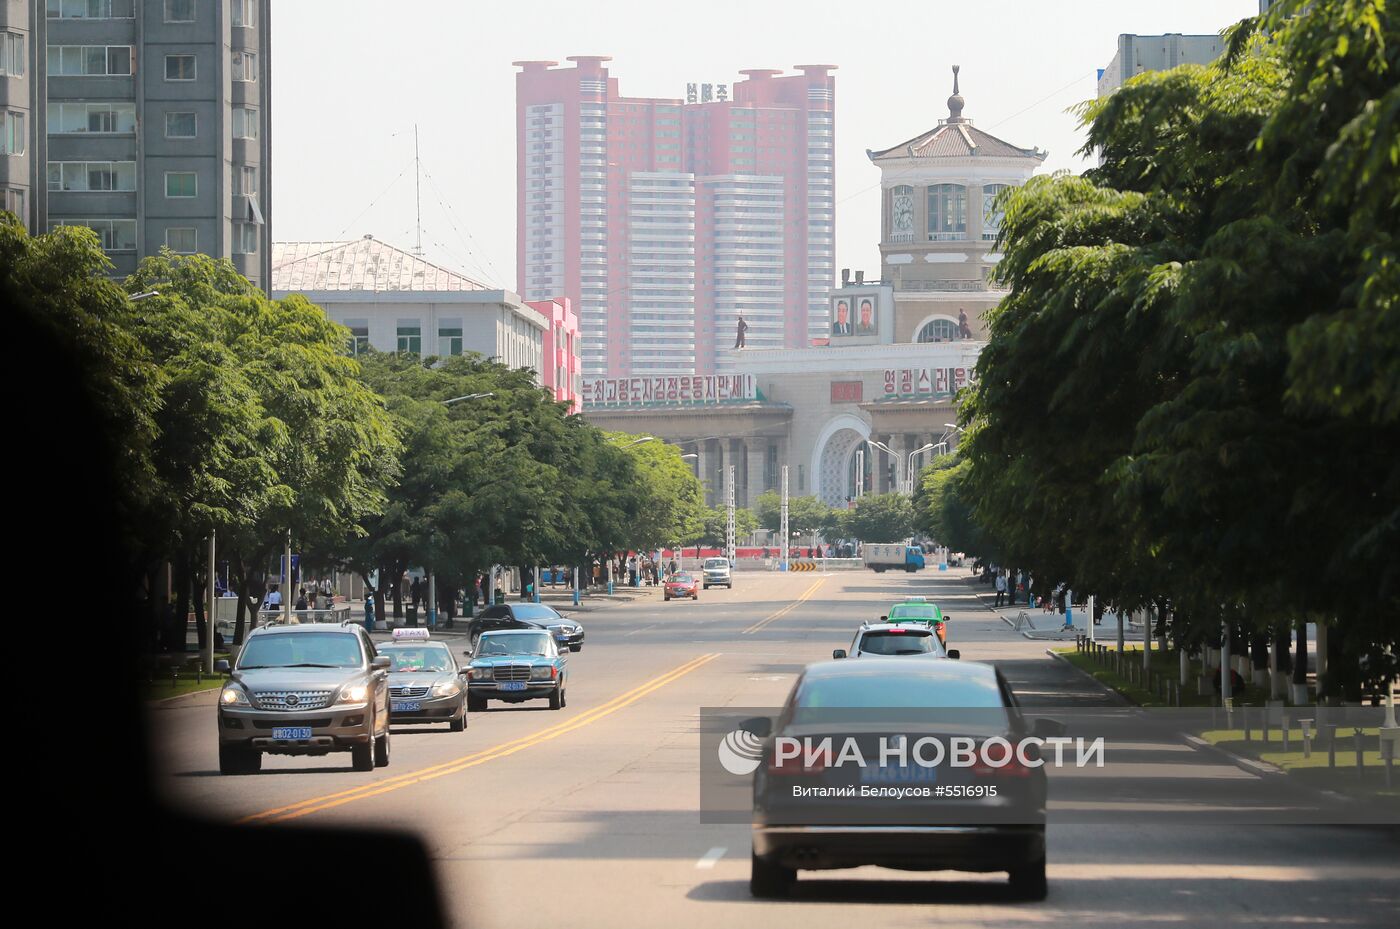 Главная улица Пхеньяна